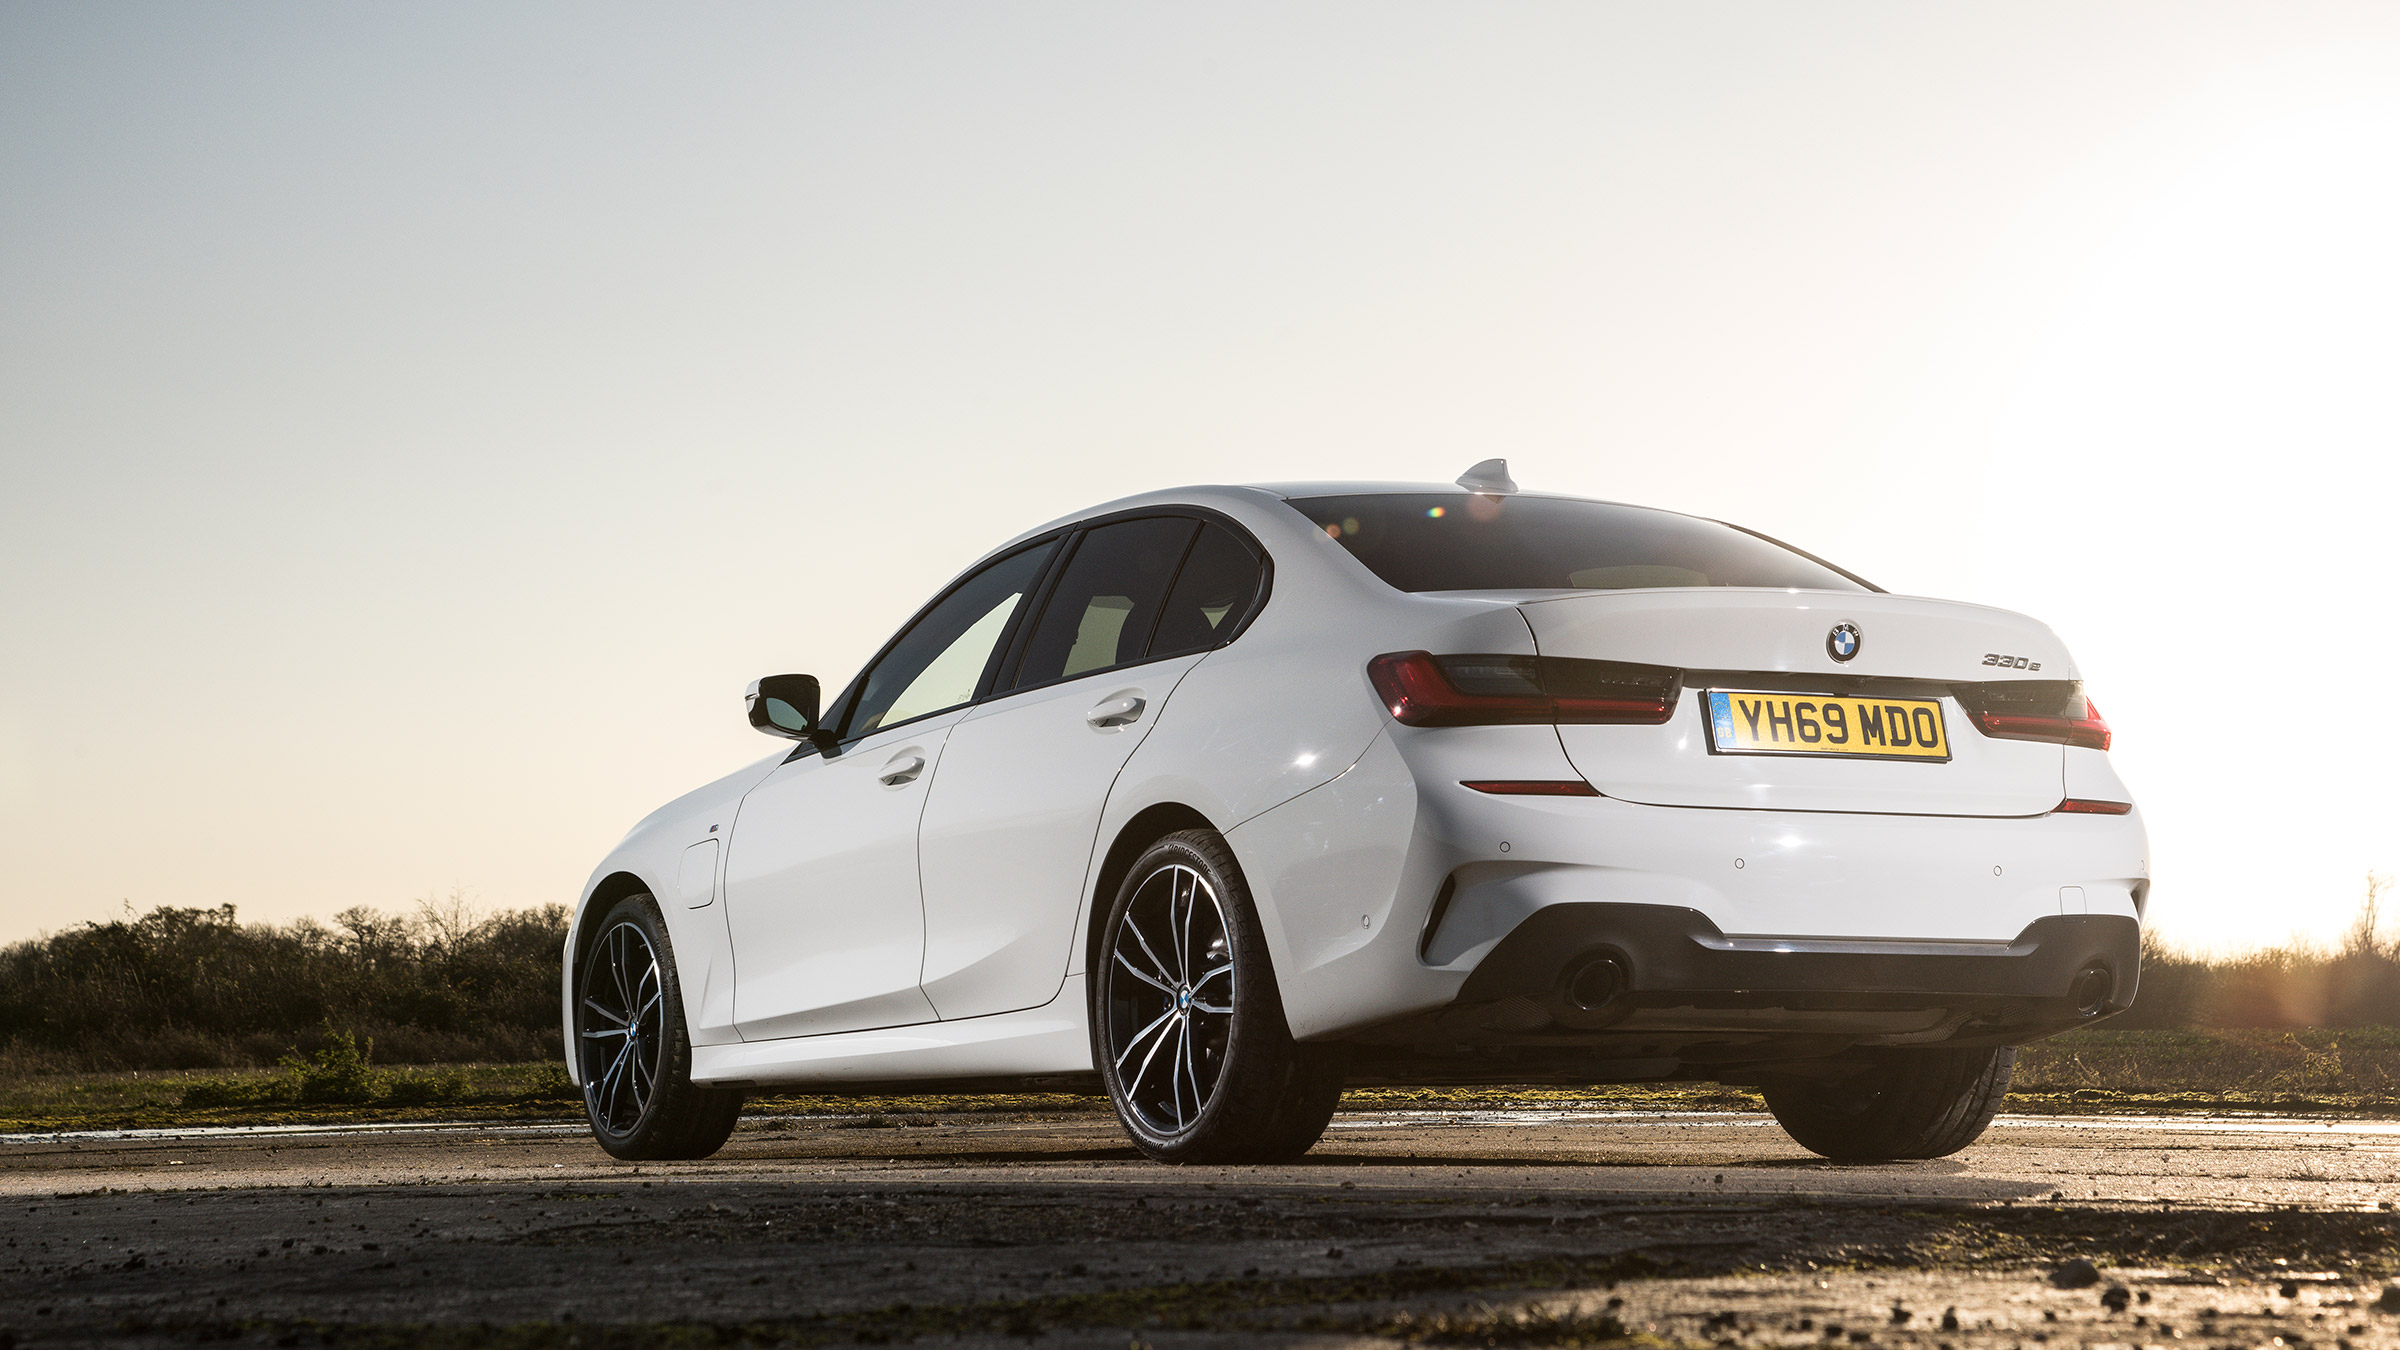 New BMW 330e 2020 review evo